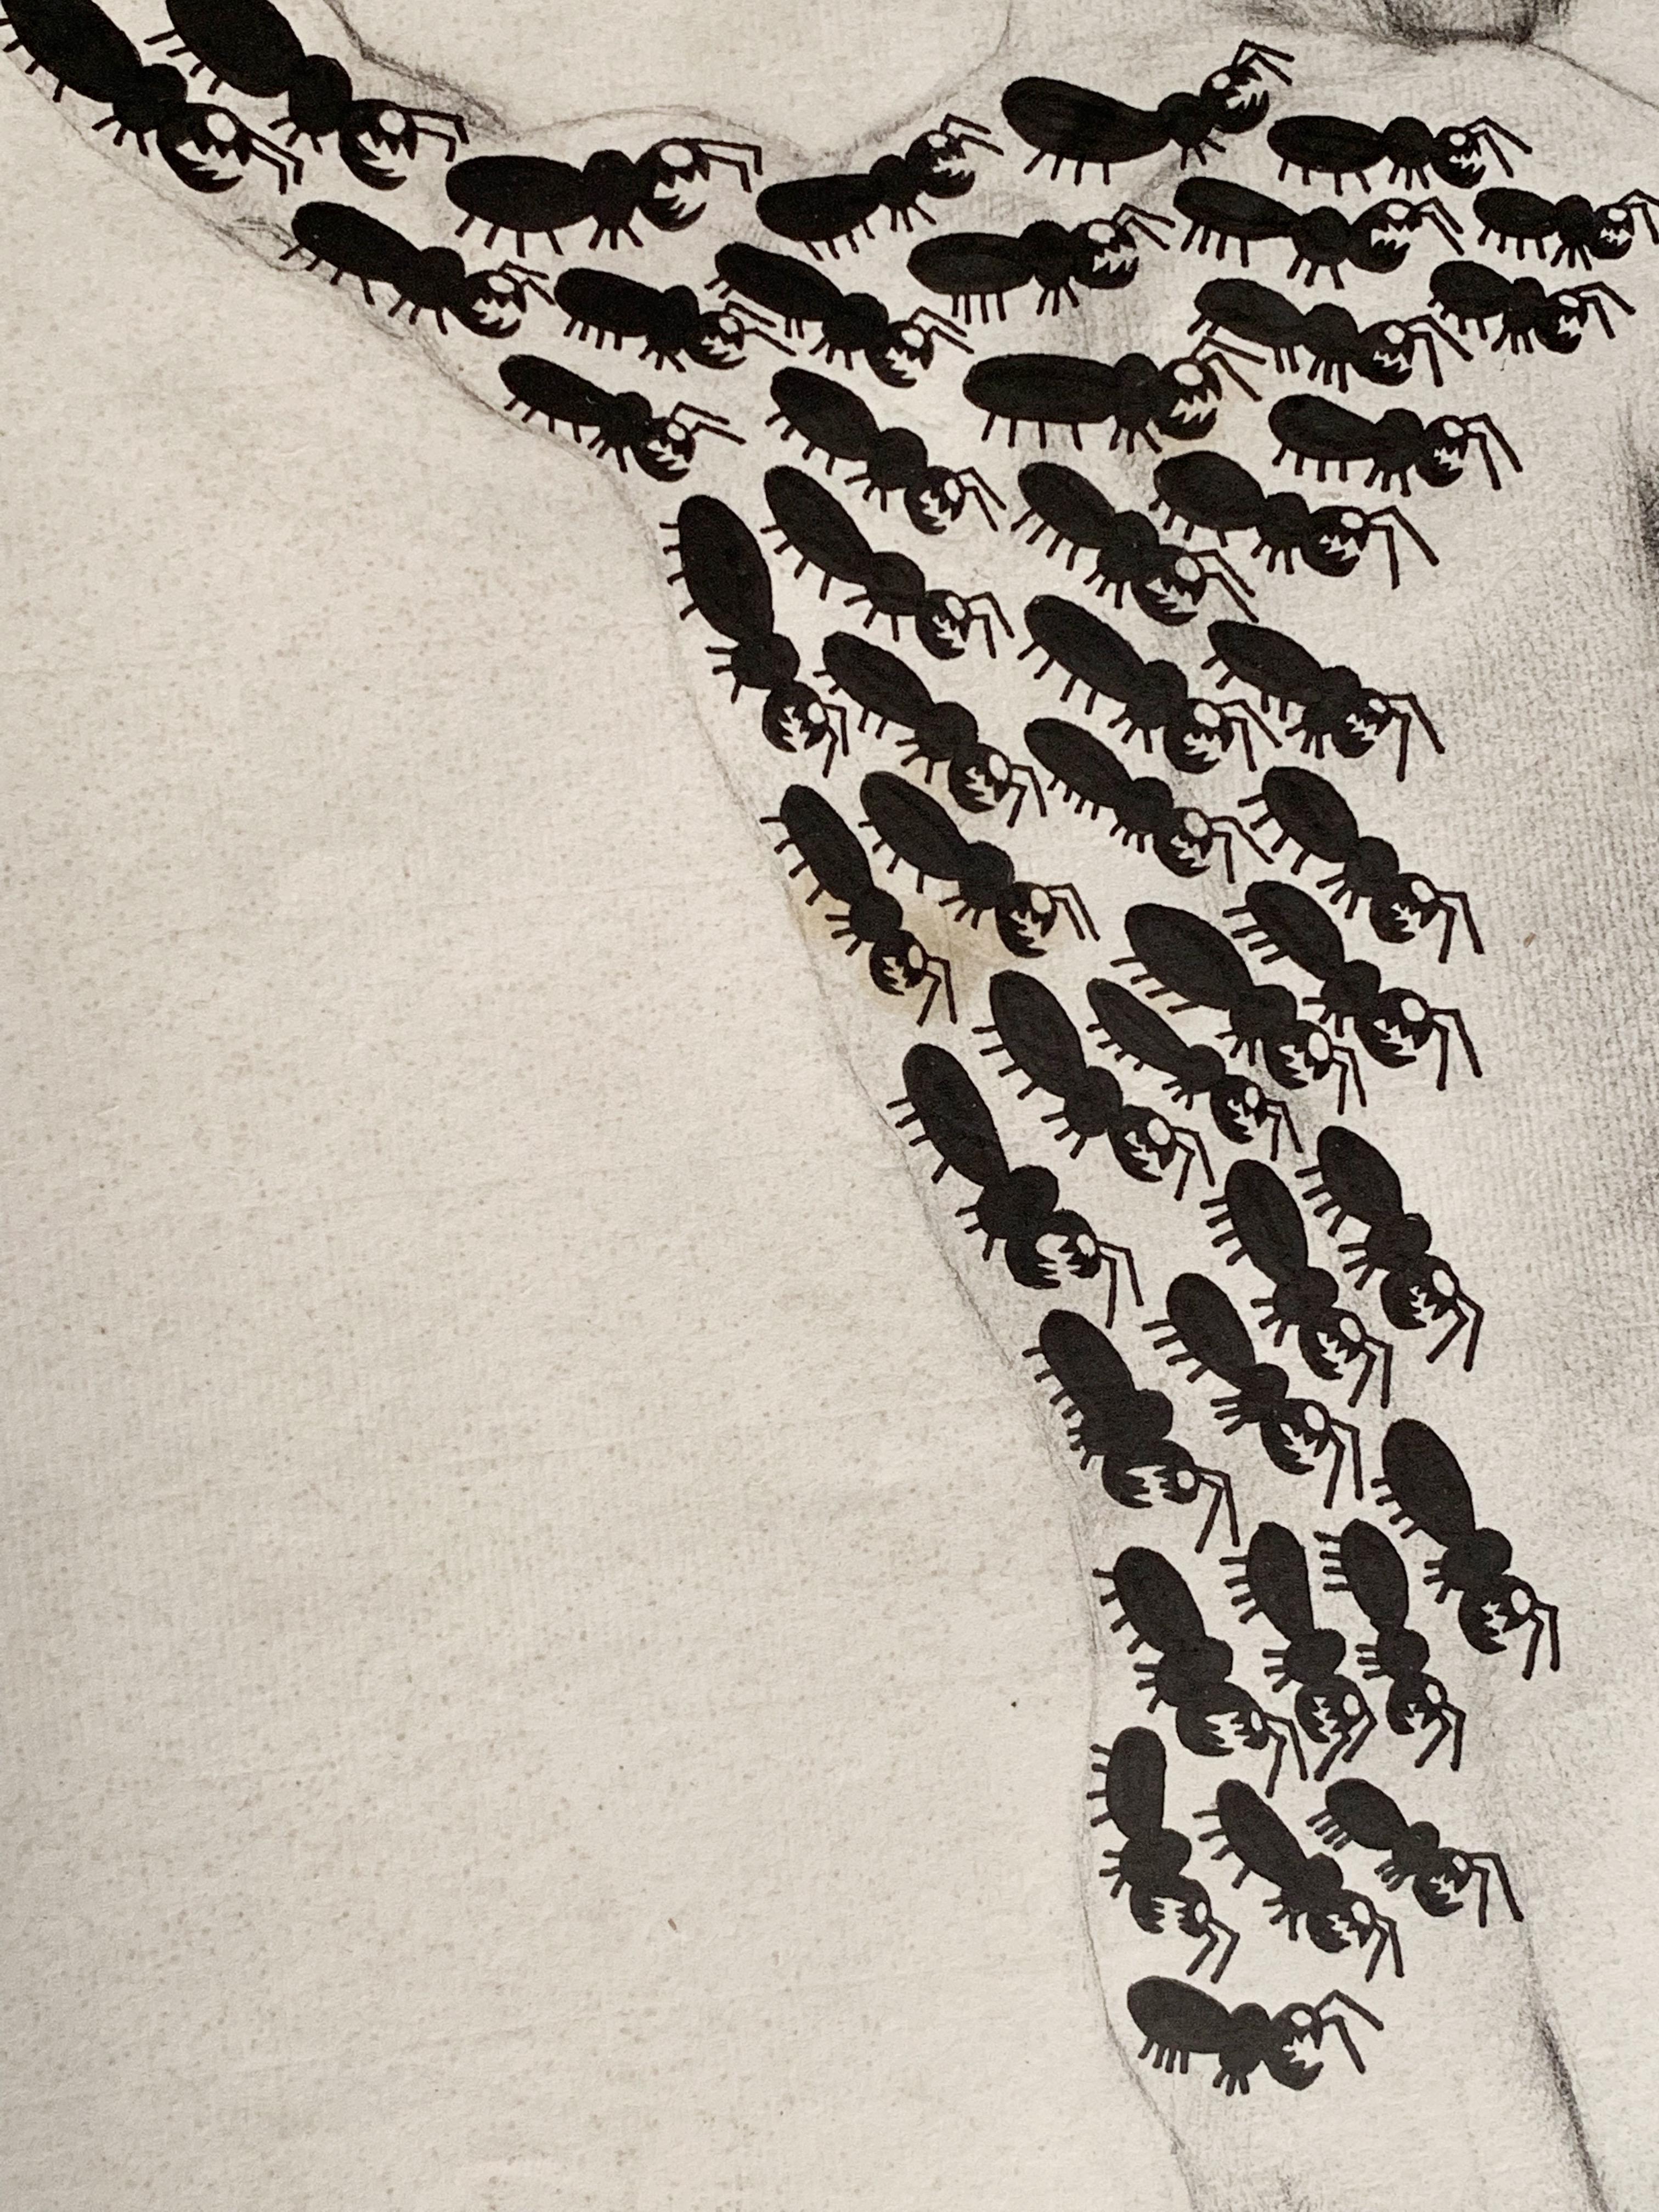 Michel Boudin (né en 1944)
L'Homme qui ne se doute de rien, 1999
India ink on old pencil drawing on paper dated 